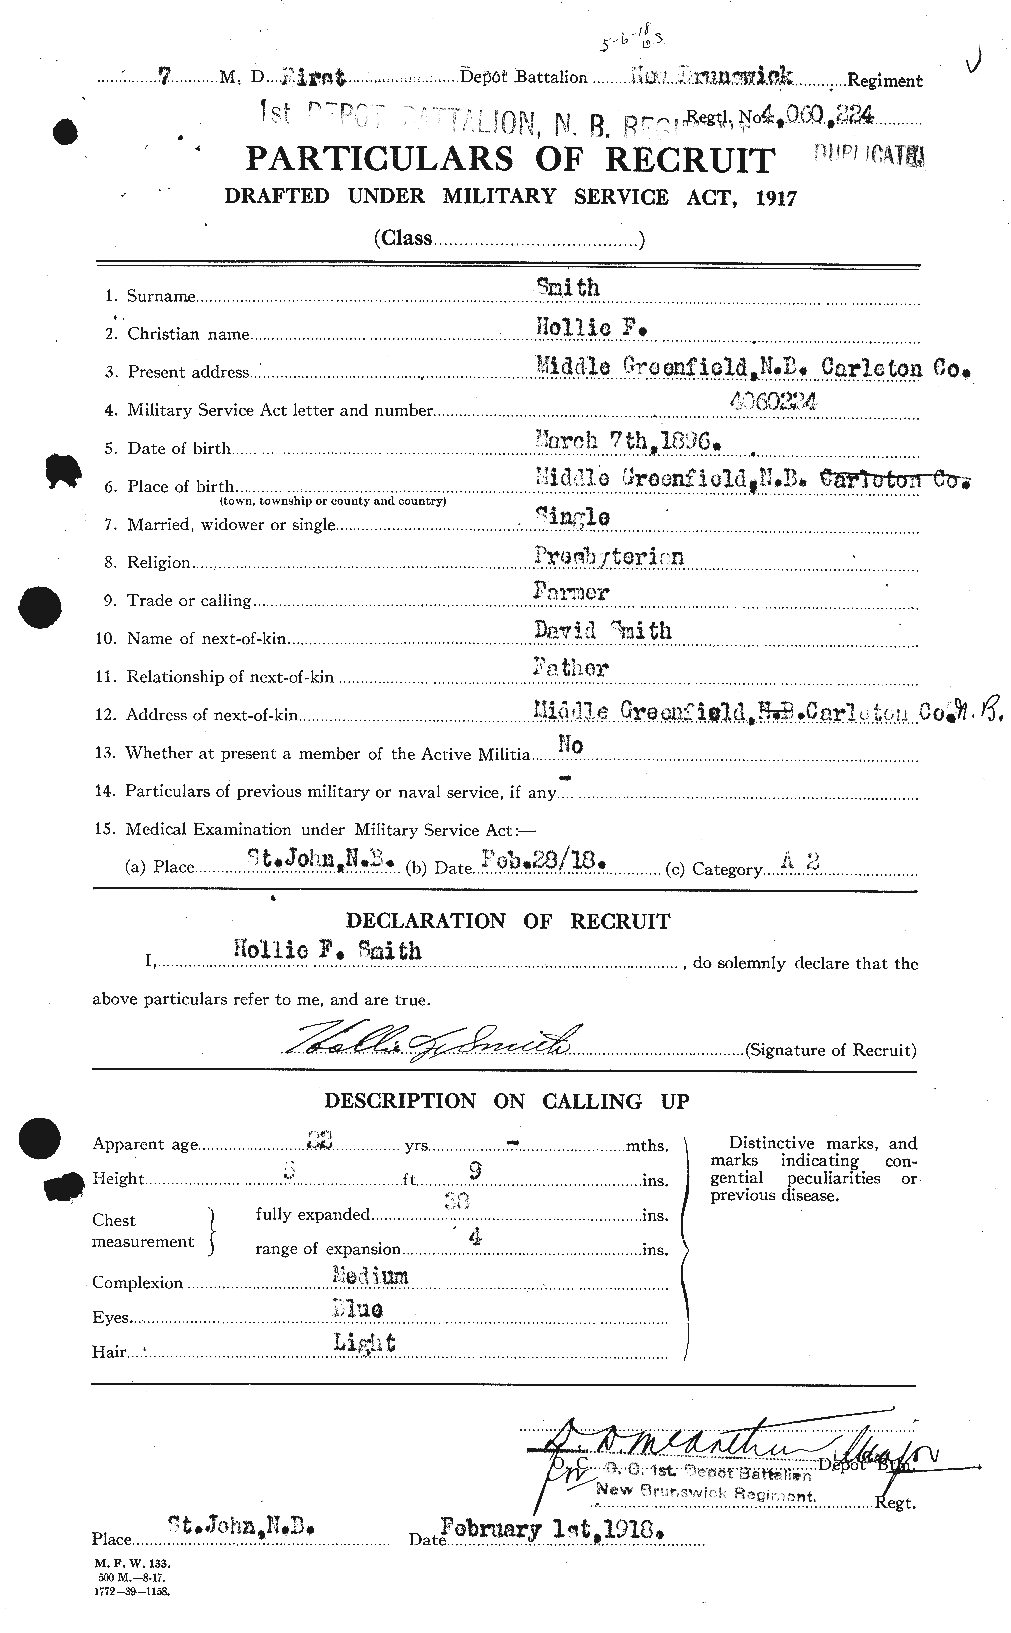 Dossiers du Personnel de la Première Guerre mondiale - CEC 103958a